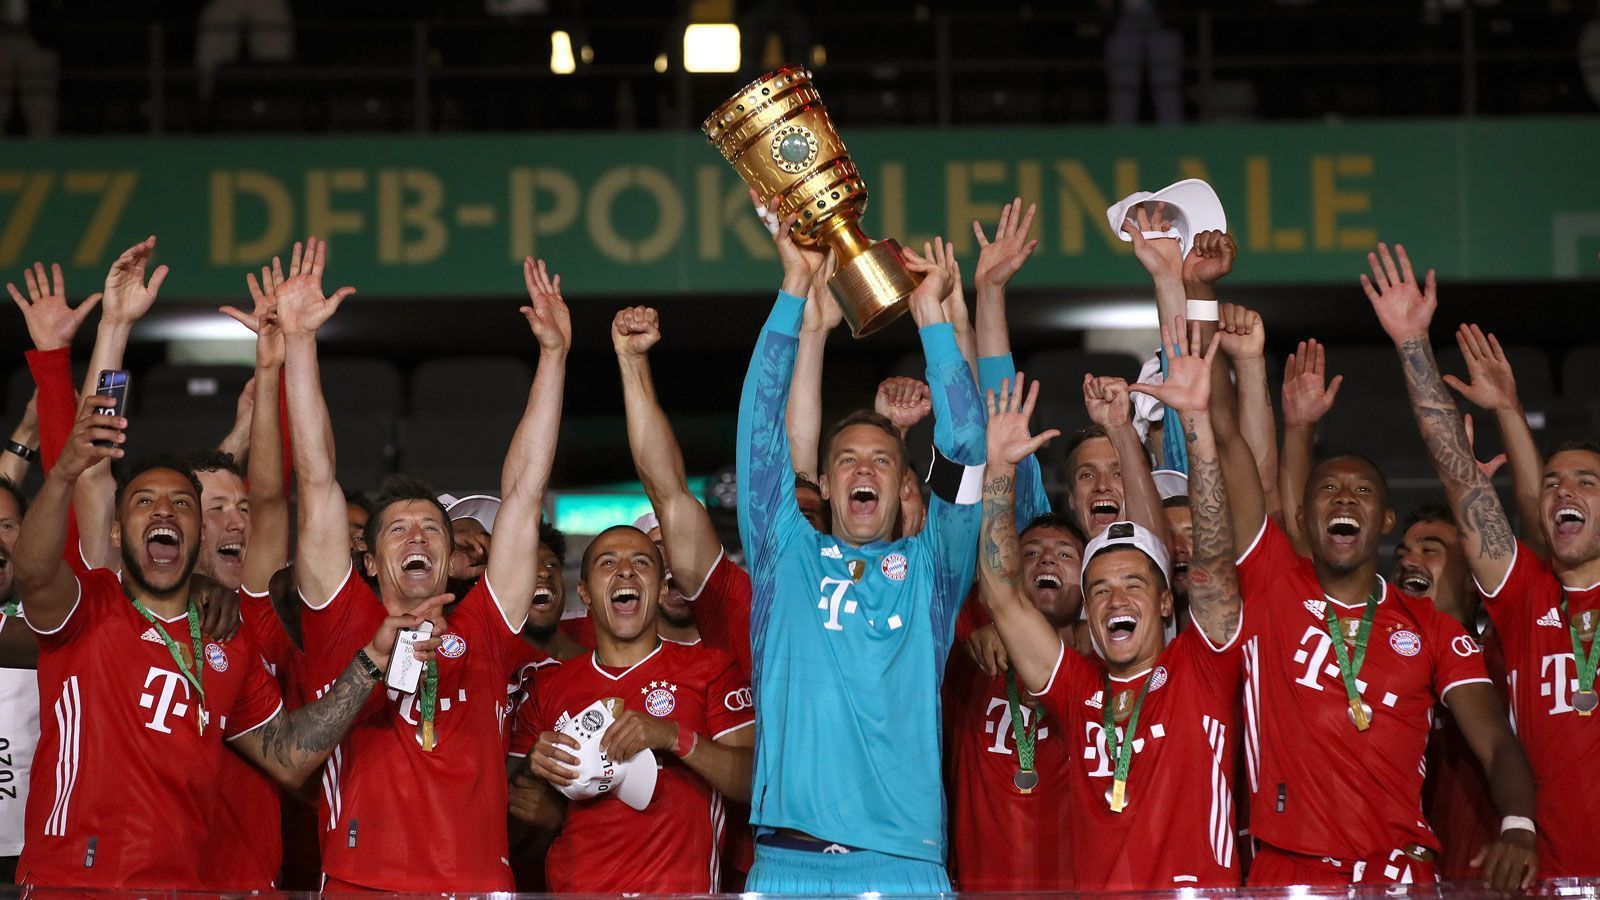 
                <strong>Der Rekordpokalsieger: Bayern München, 20 Titel</strong><br>
                Die Bayern konnten den DFB-Pokal zwischen 1957 und 2020 (Bild) genau 20 Mal gewinnen. Damit liegen sie in der Liste der häufigsten Pokalsieger mit riesigem Abstand vor Werder Bremen (sechs Titel) und Schalke 04 und Eintracht Frankfurt (je fünf Titel) auf Platz 1.
              